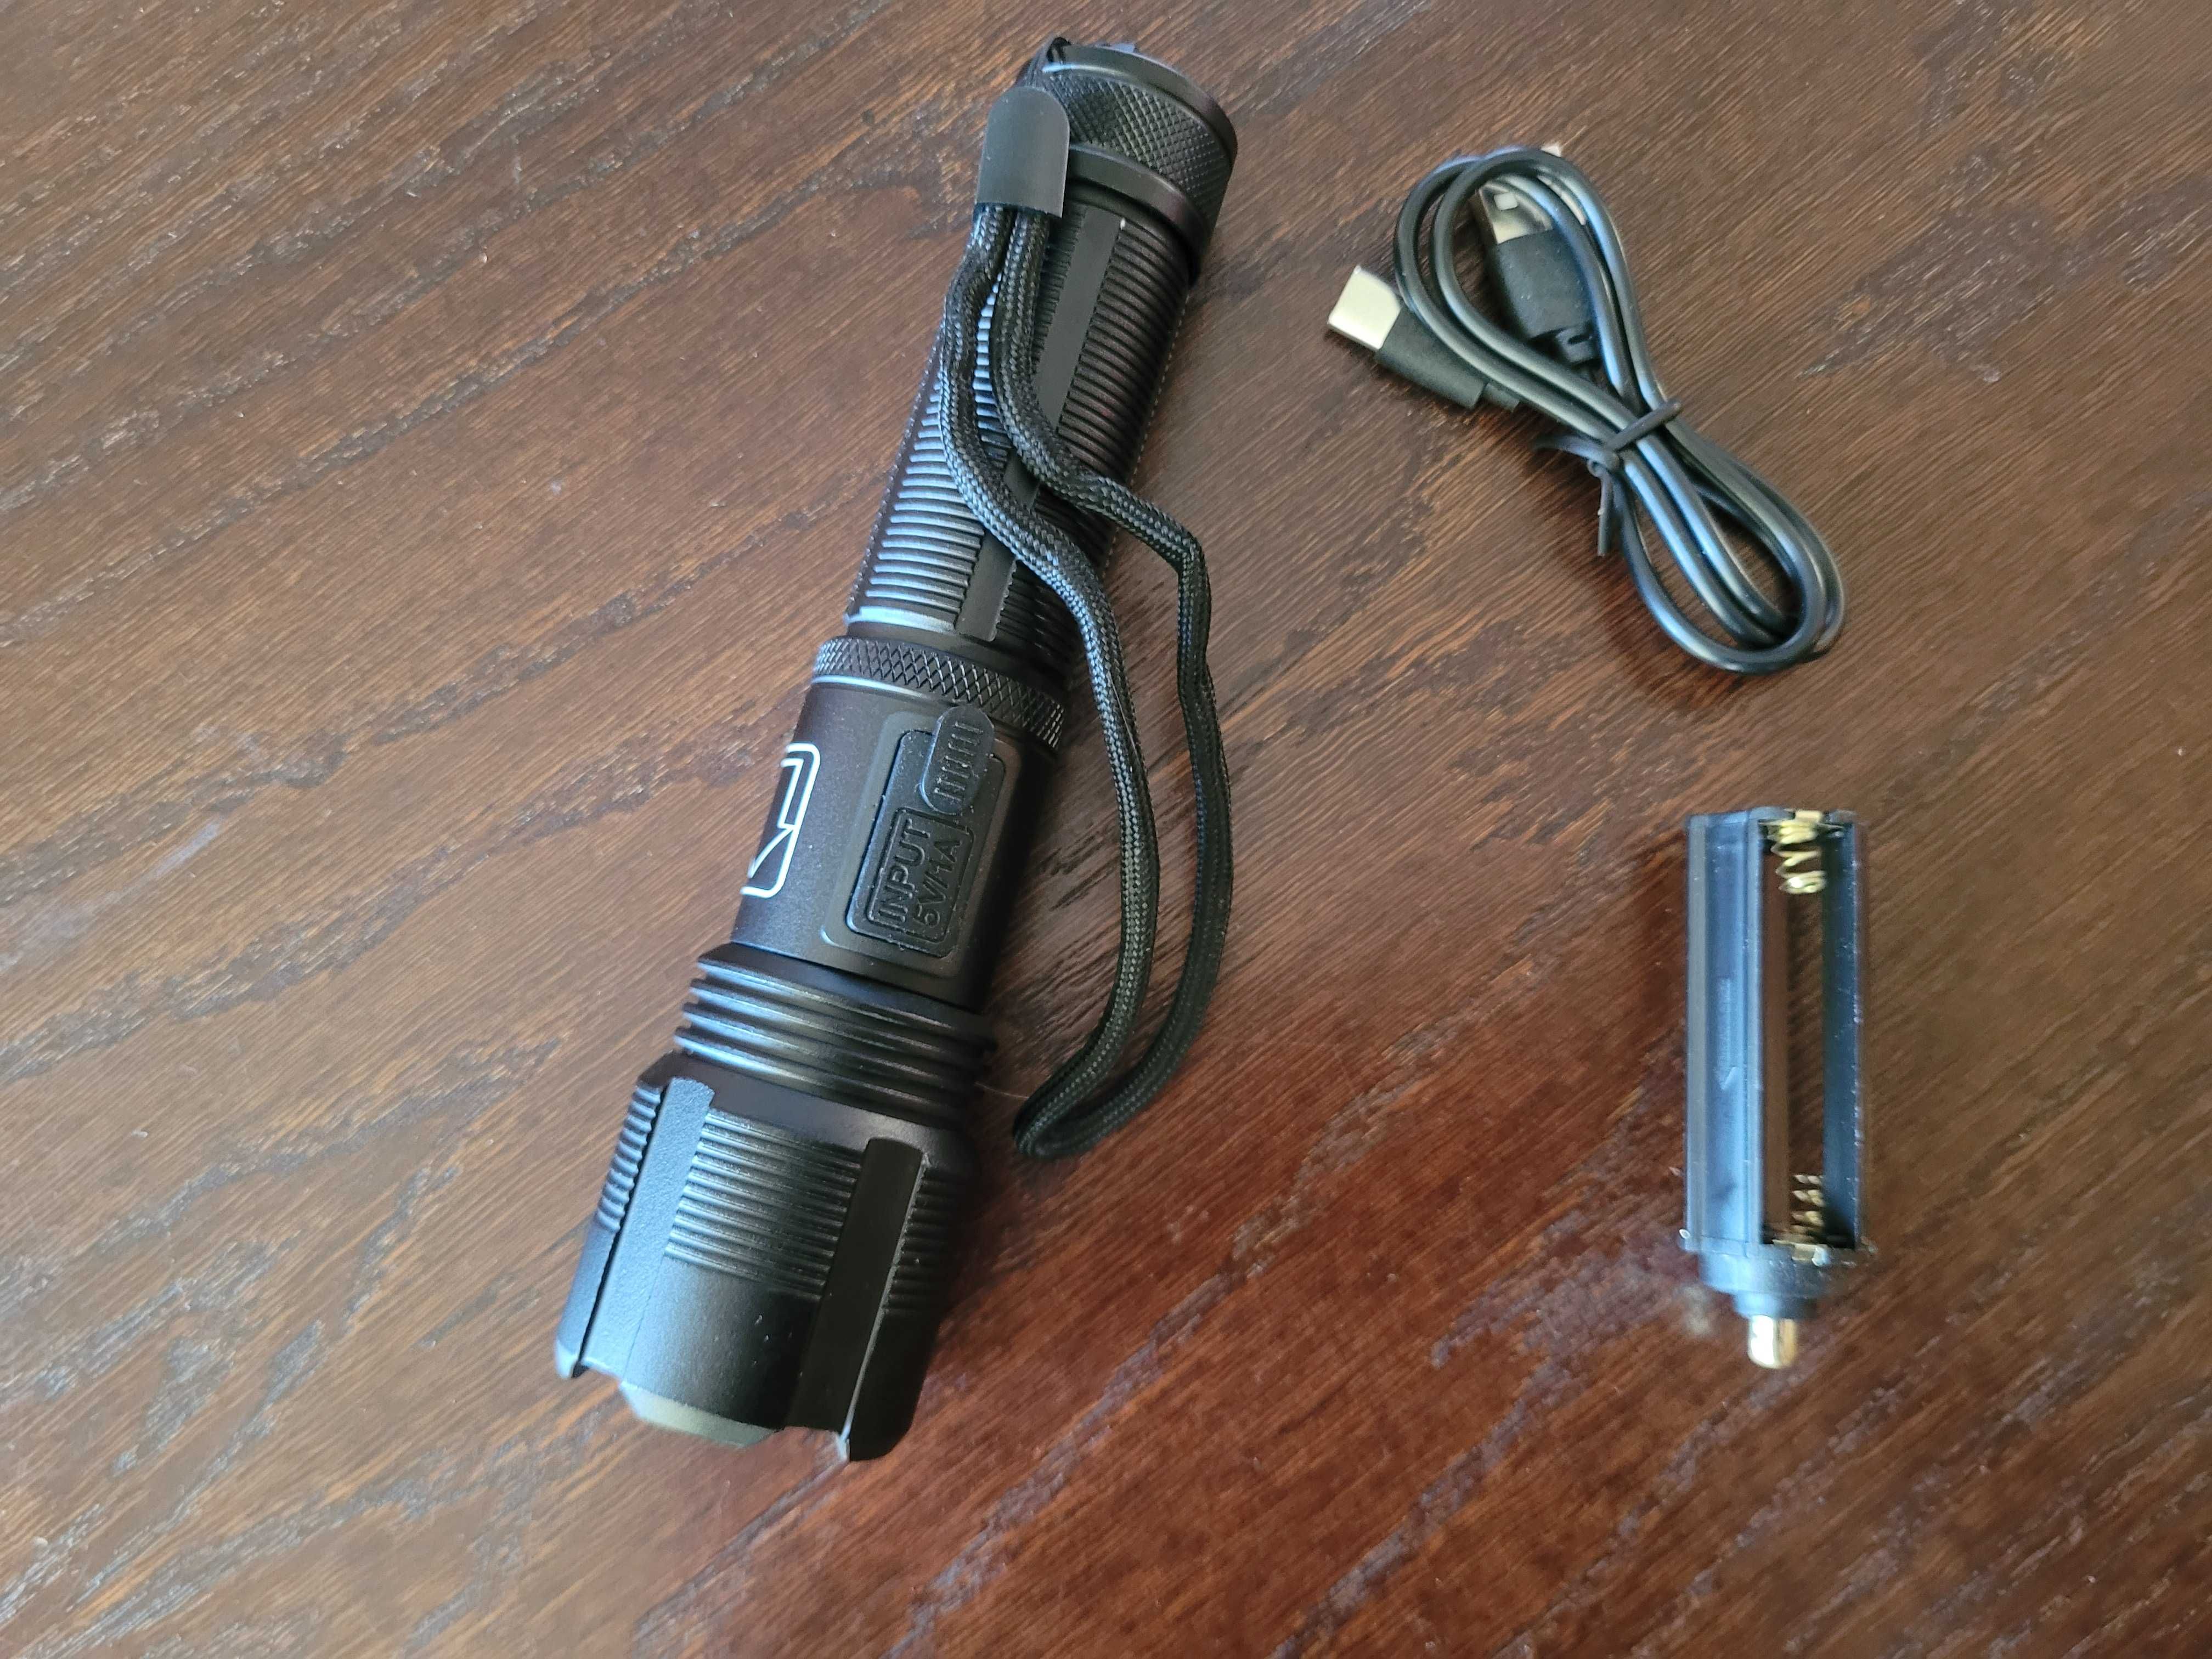 Mocna latarka LED wodoodporna ładowana przez USB 6 trybów ZOOM